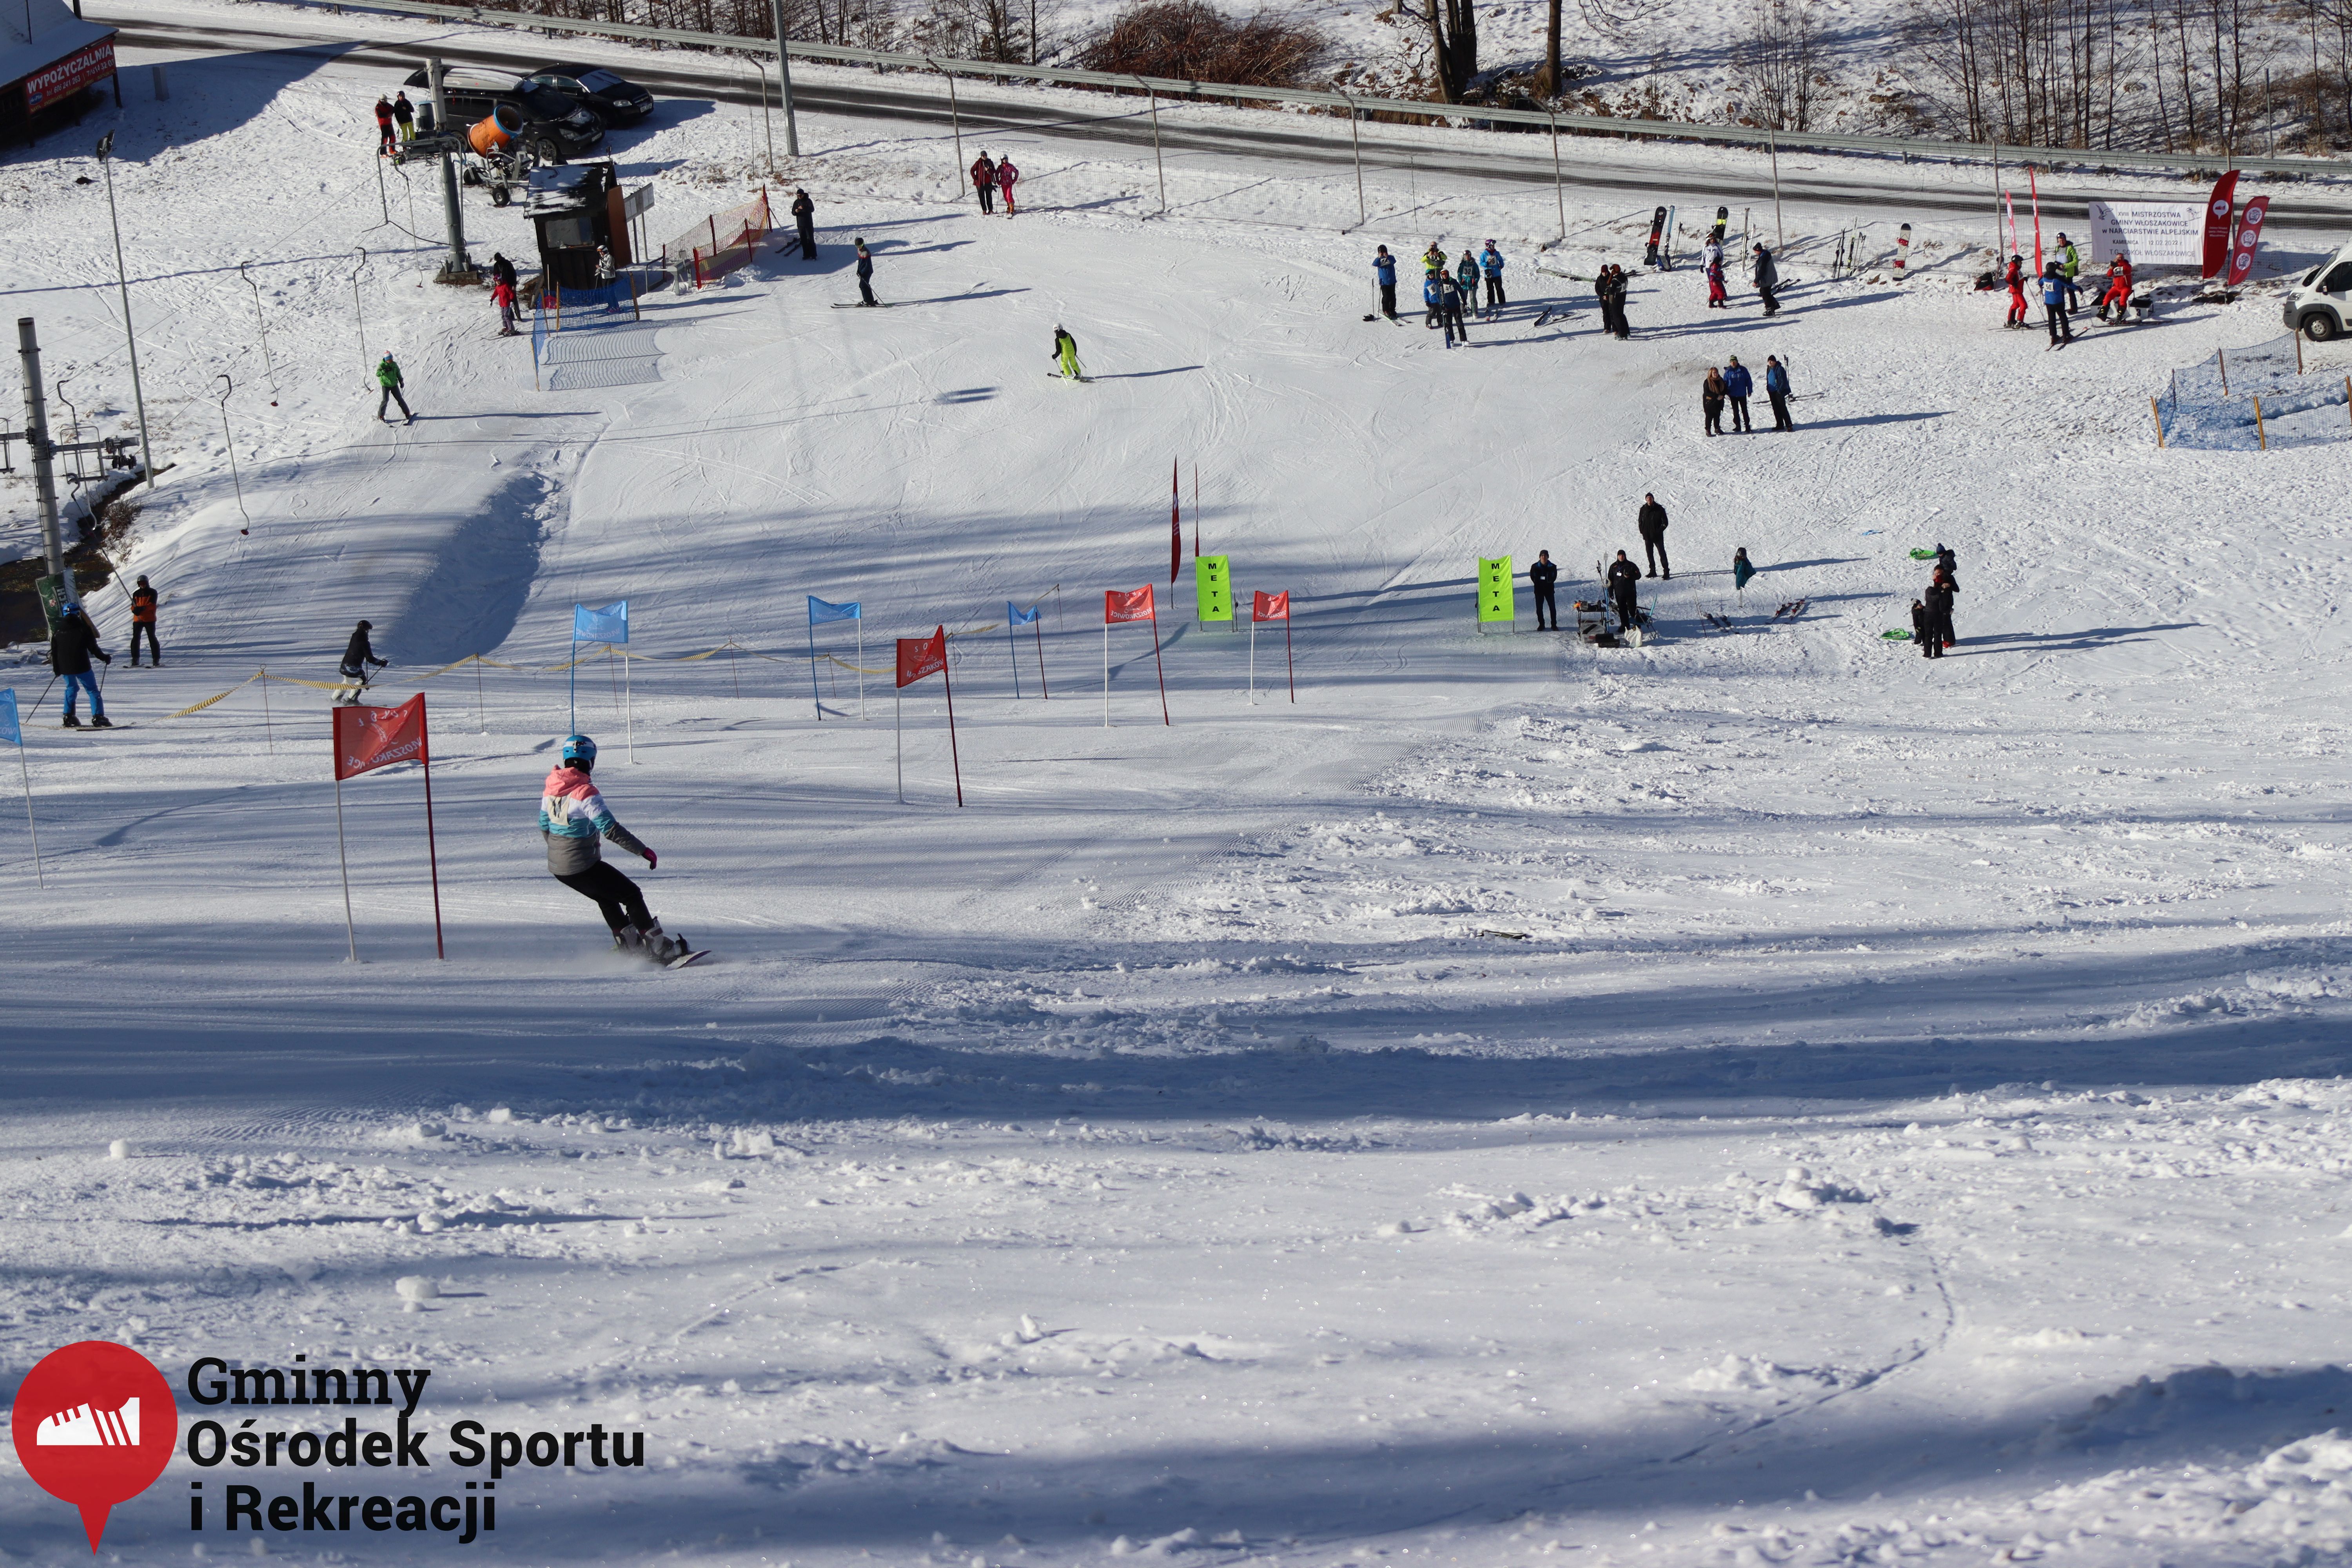 2022.02.12 - 18. Mistrzostwa Gminy Woszakowice w narciarstwie048.jpg - 3,33 MB